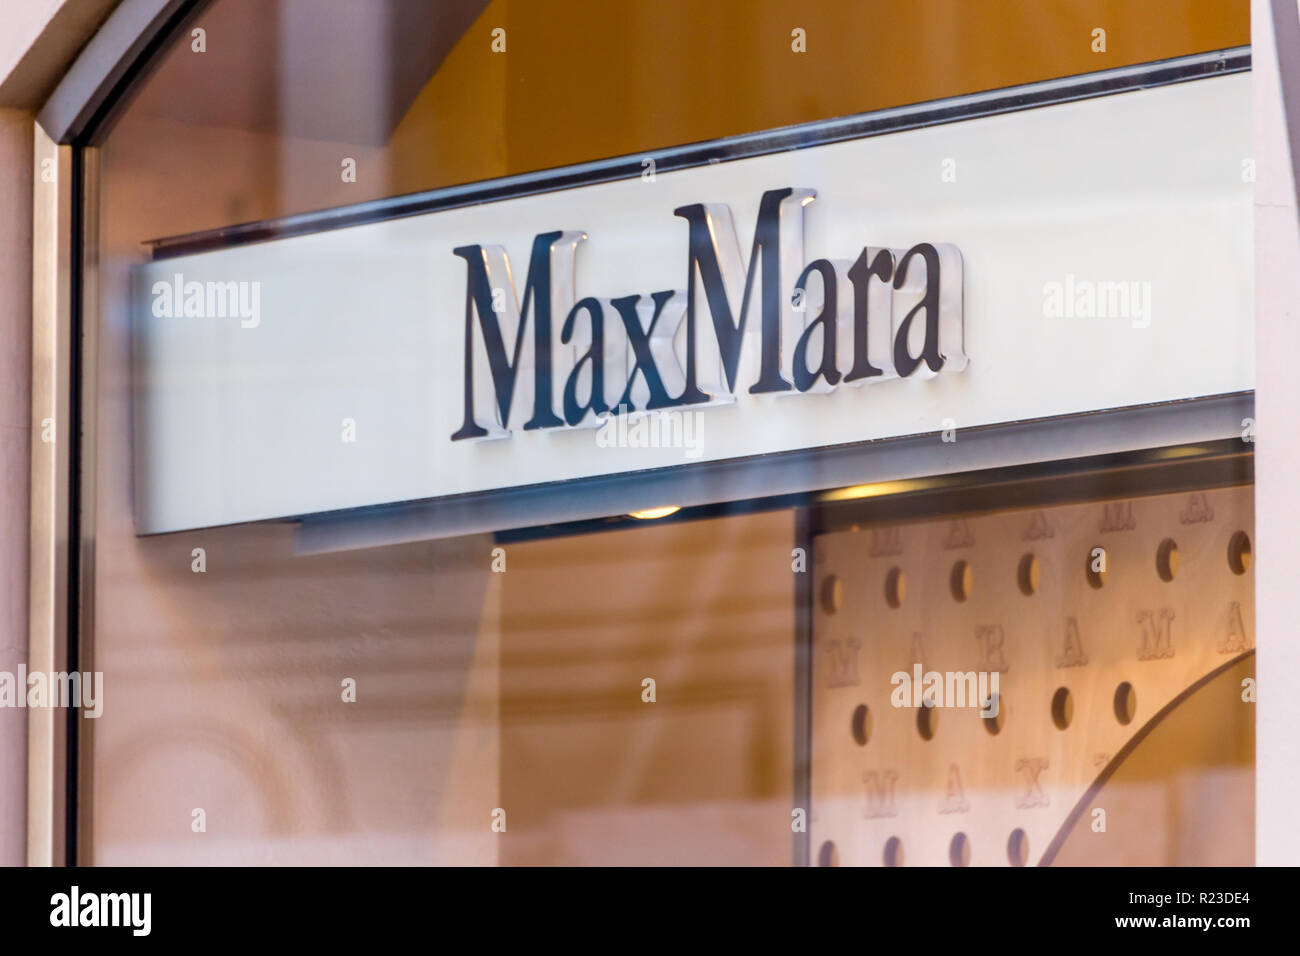 RAVENNA, ITALIE - Le 12 septembre 2018 : la lumière est éclairant MaxMara logo sur storefront Banque D'Images